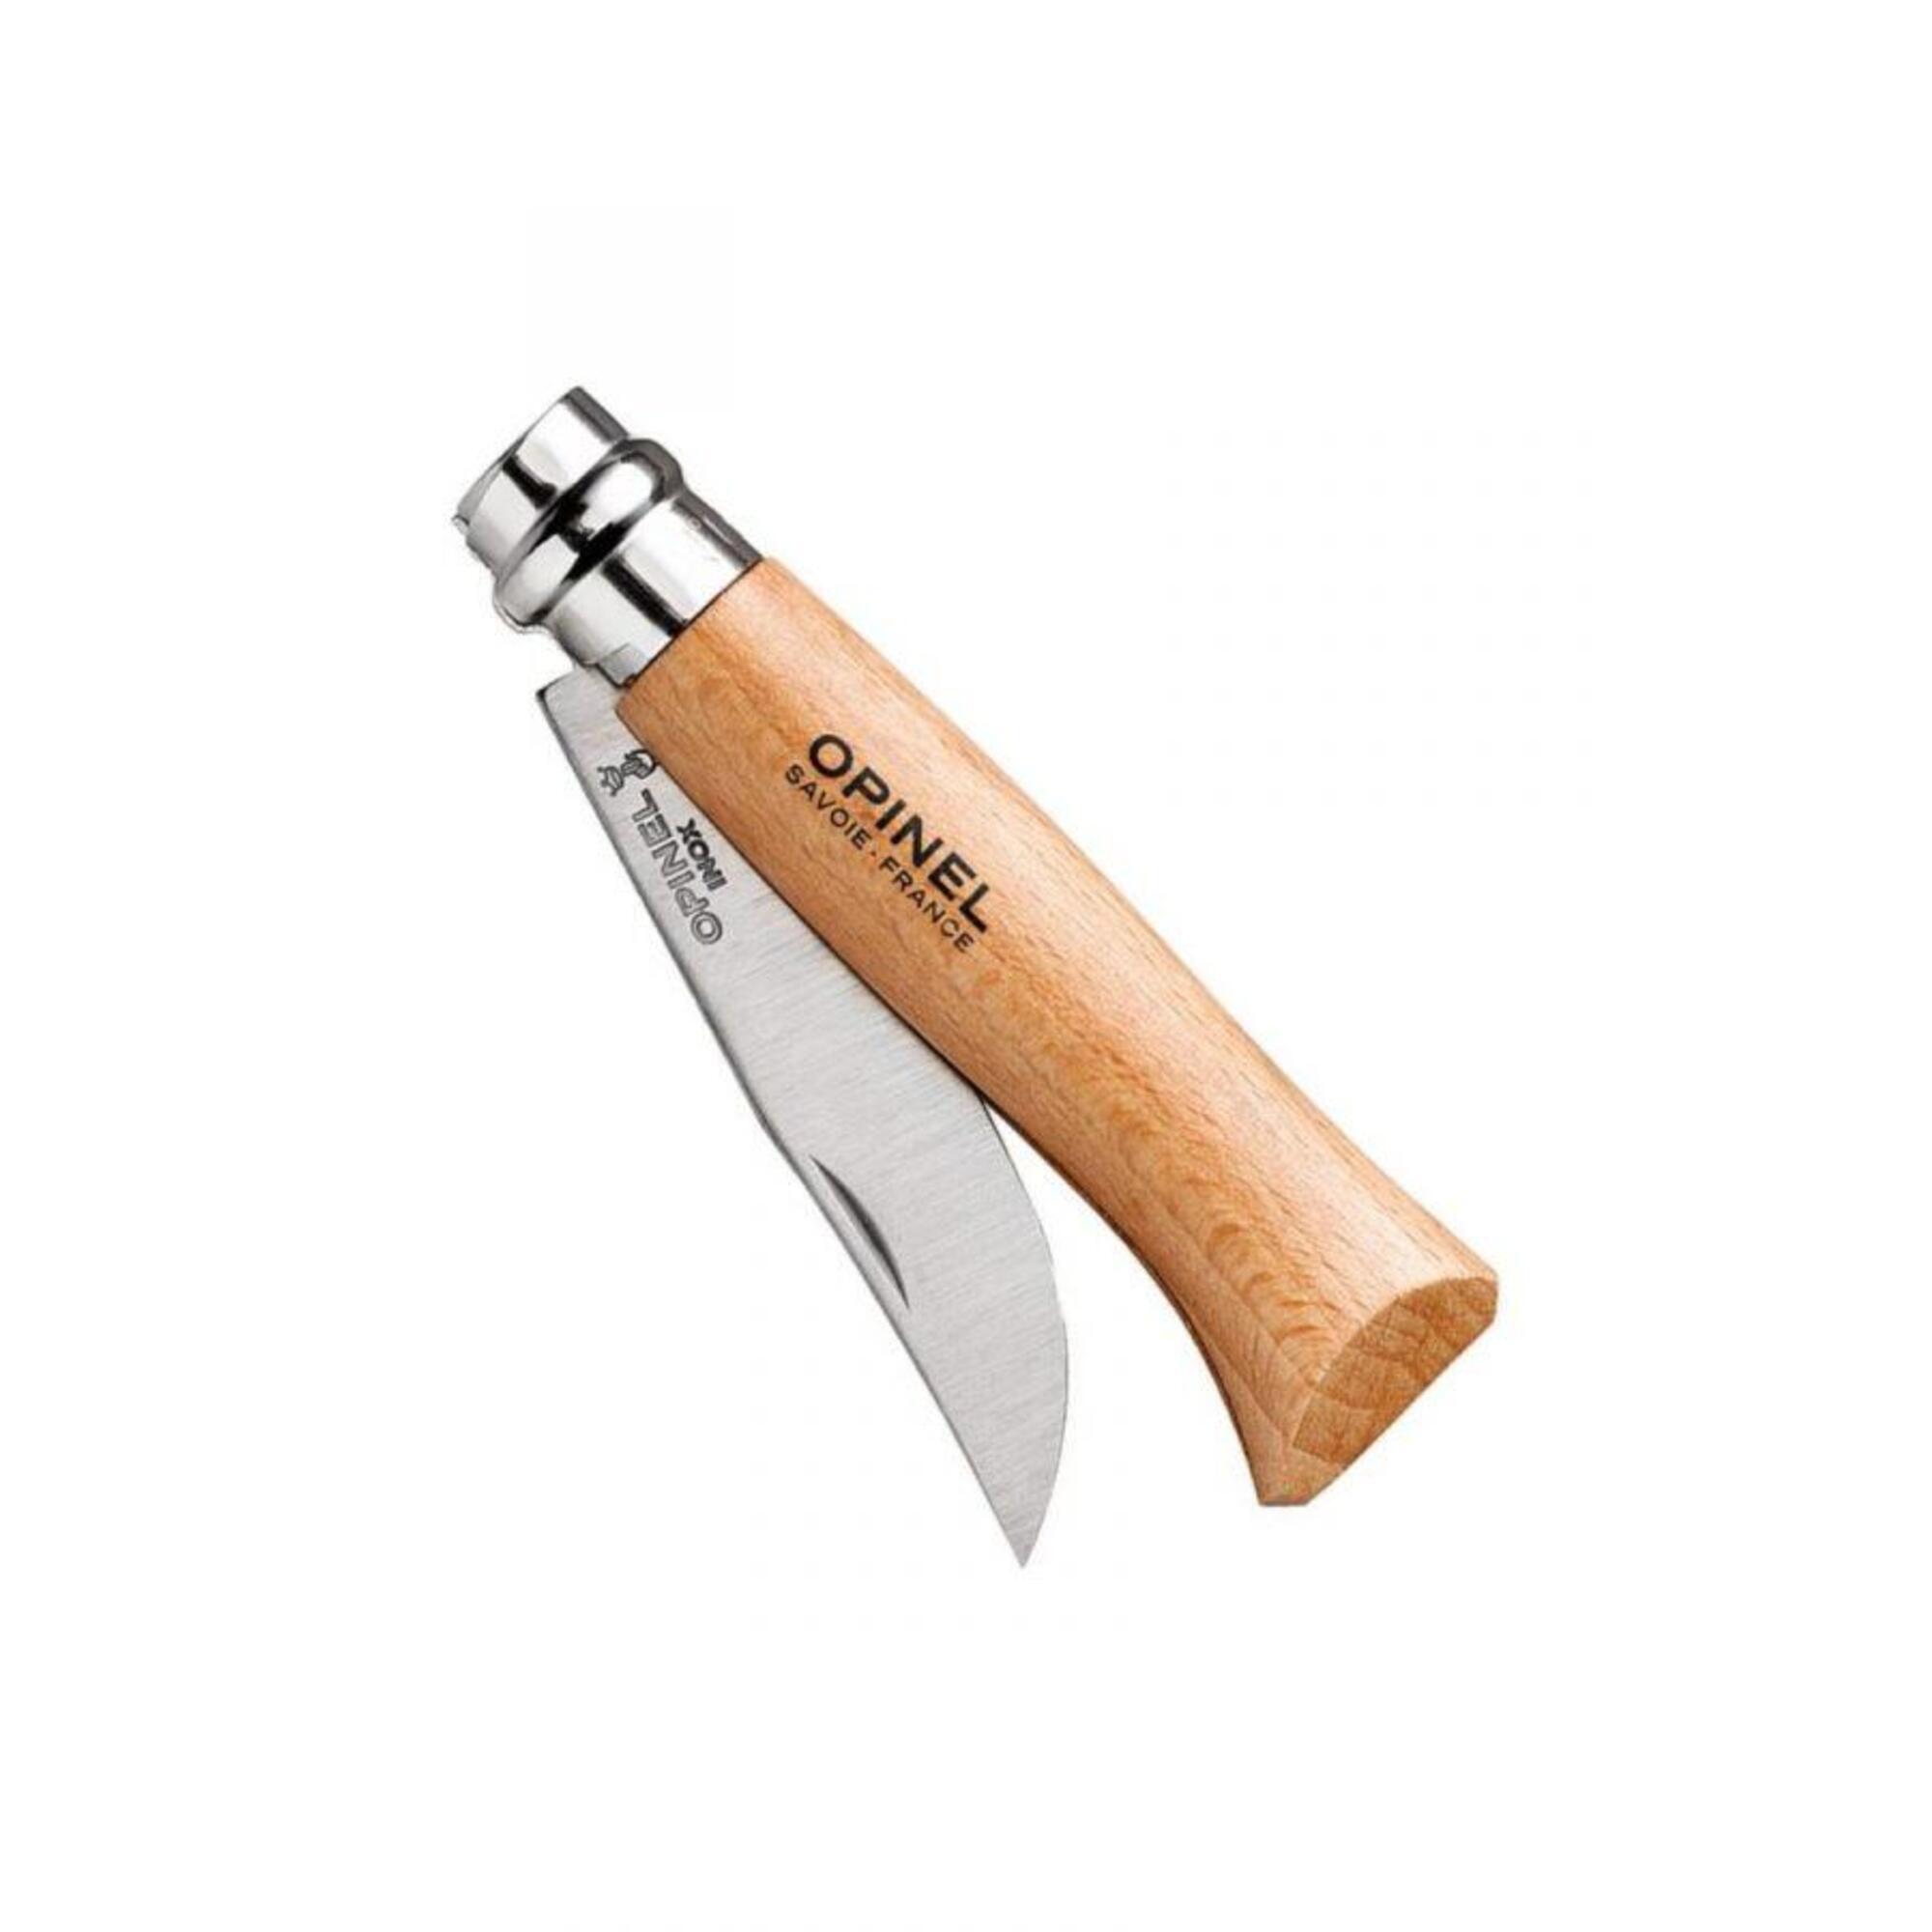 Cuchillos Y Multi-herramientas Opinel Tradicion Inox Nº08